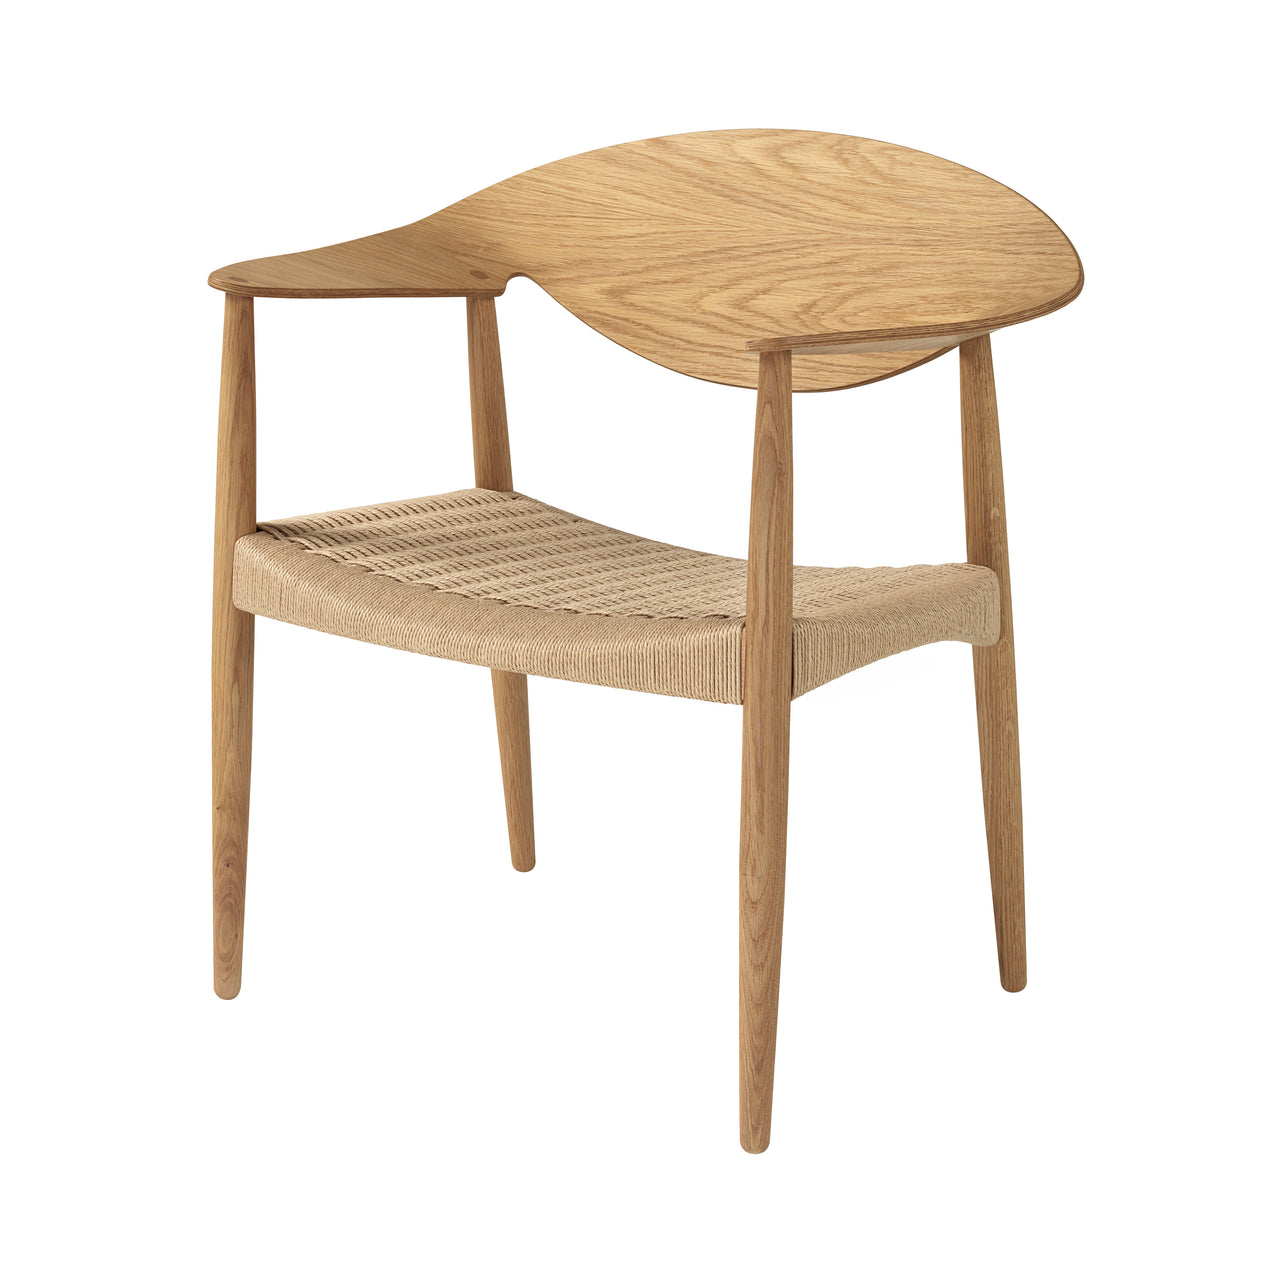 LM92C Metropolitan Chair: Oiled Oak